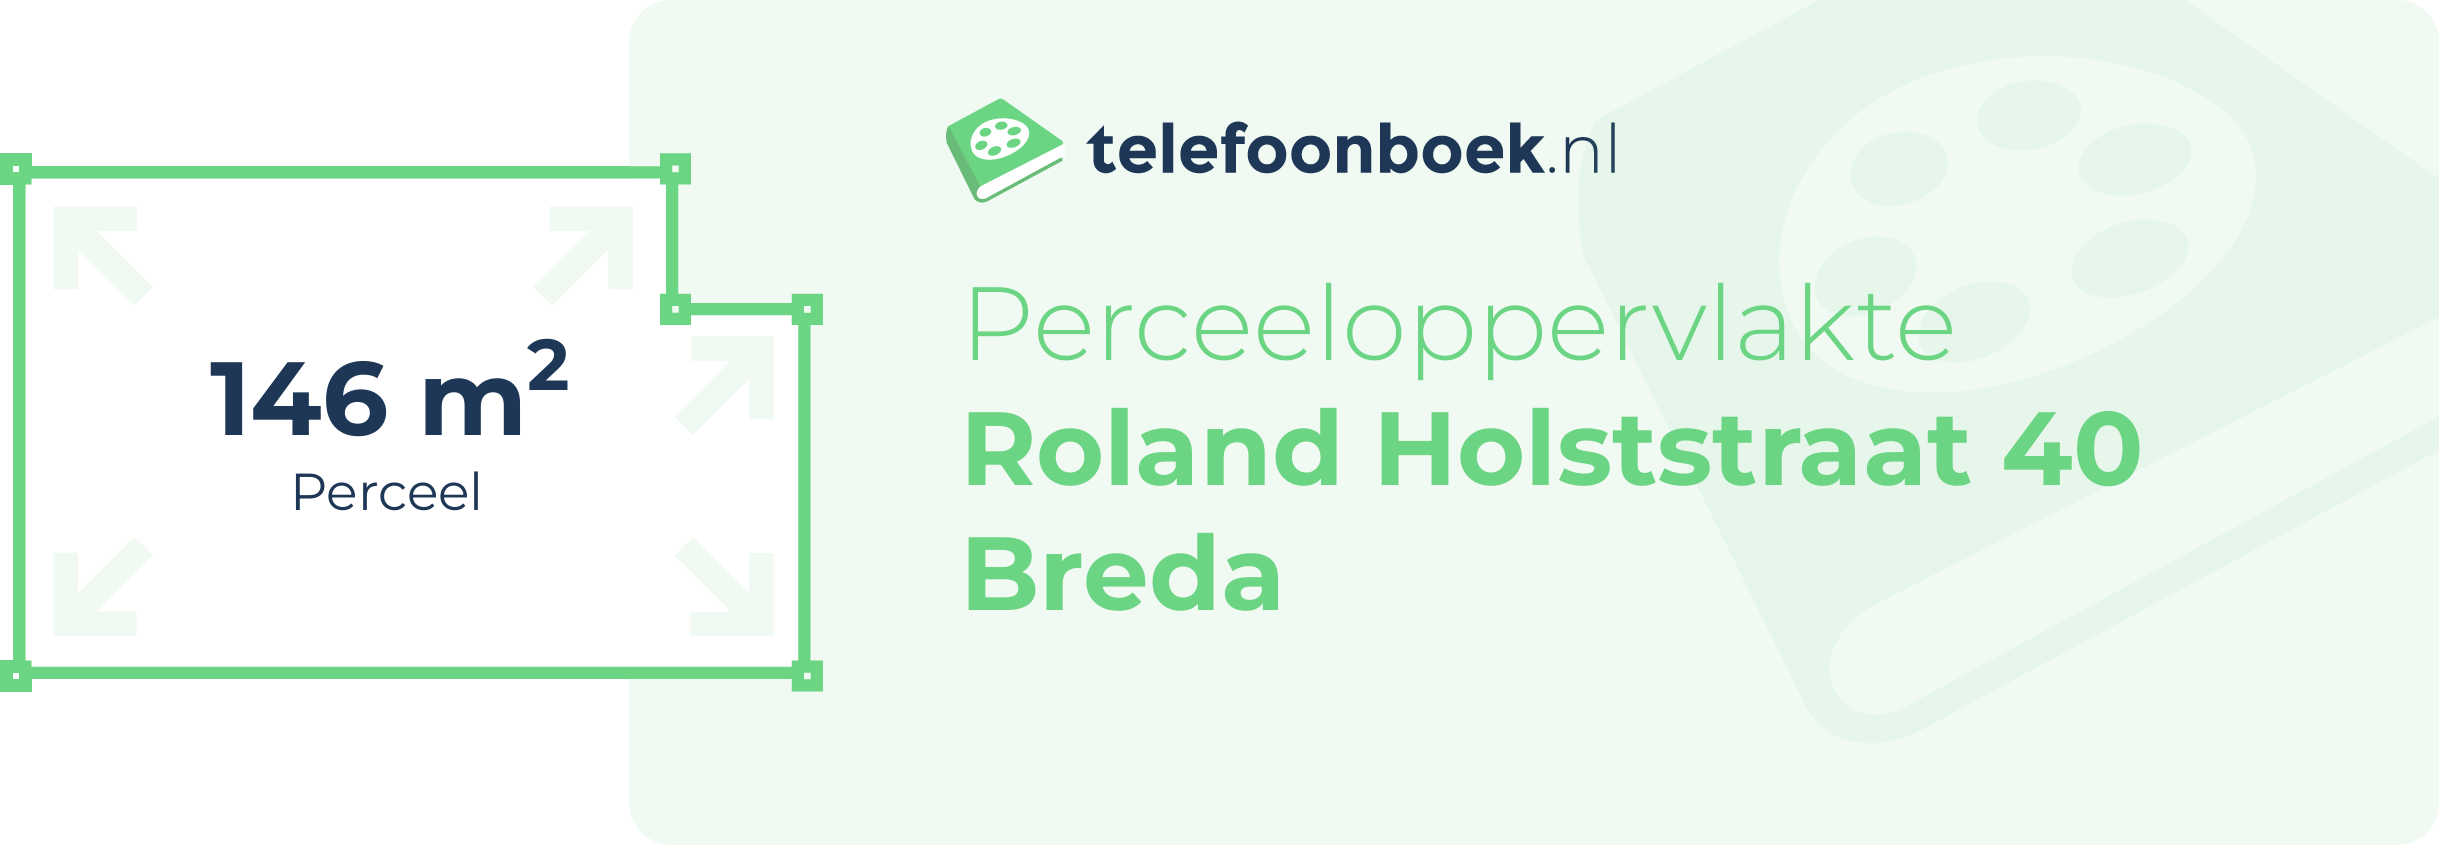 Perceeloppervlakte Roland Holststraat 40 Breda